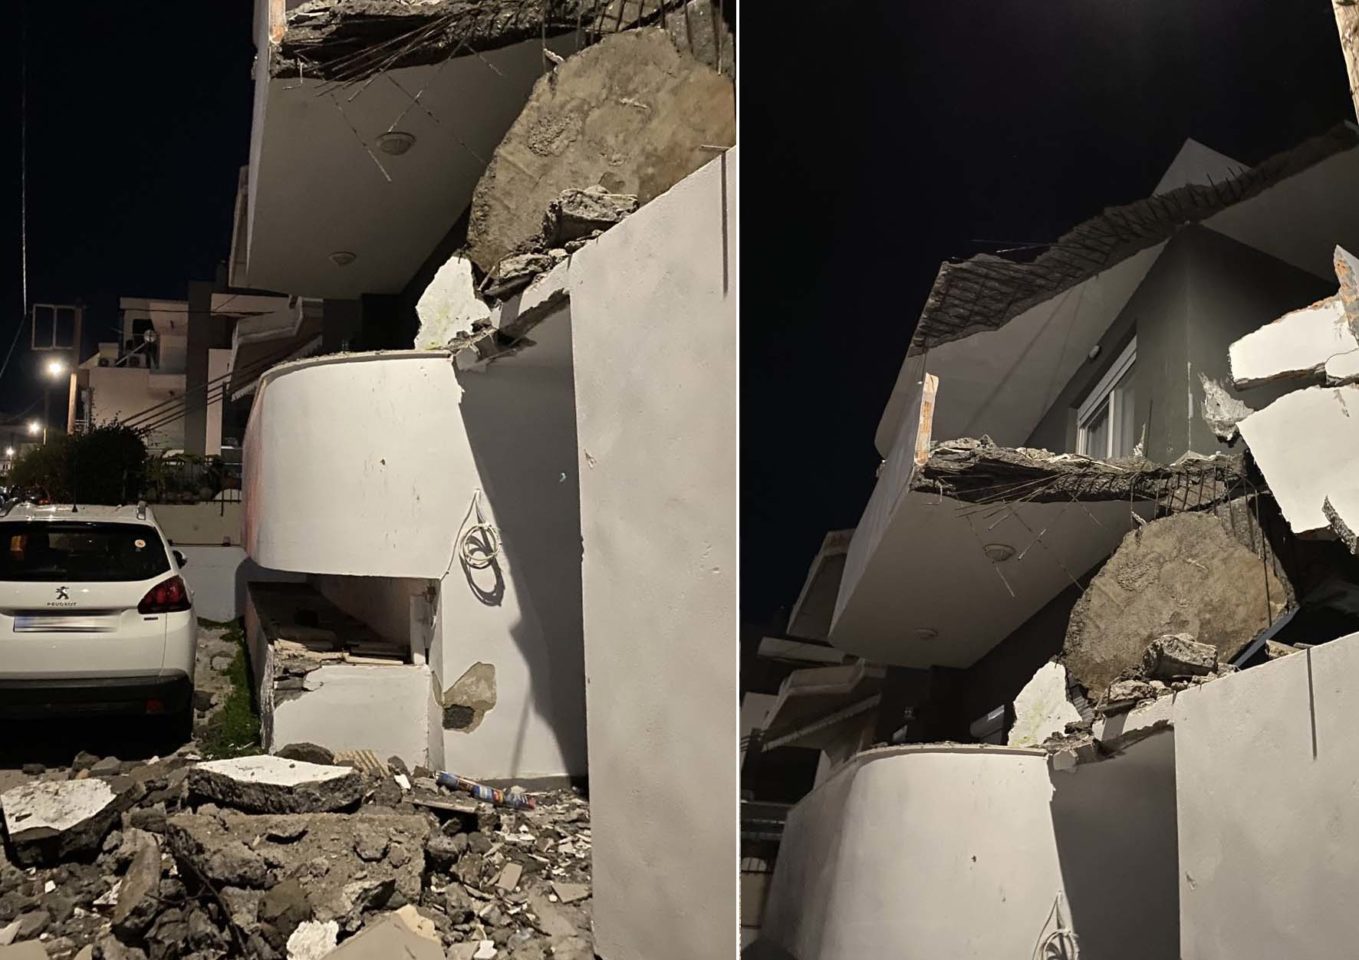 Ηράκλειο: Μπαλκόνι κατέρρευσε μπροστά στα μάτια των περαστικών- Δείτε τις εικόνες - ΕΛΛΑΔΑ